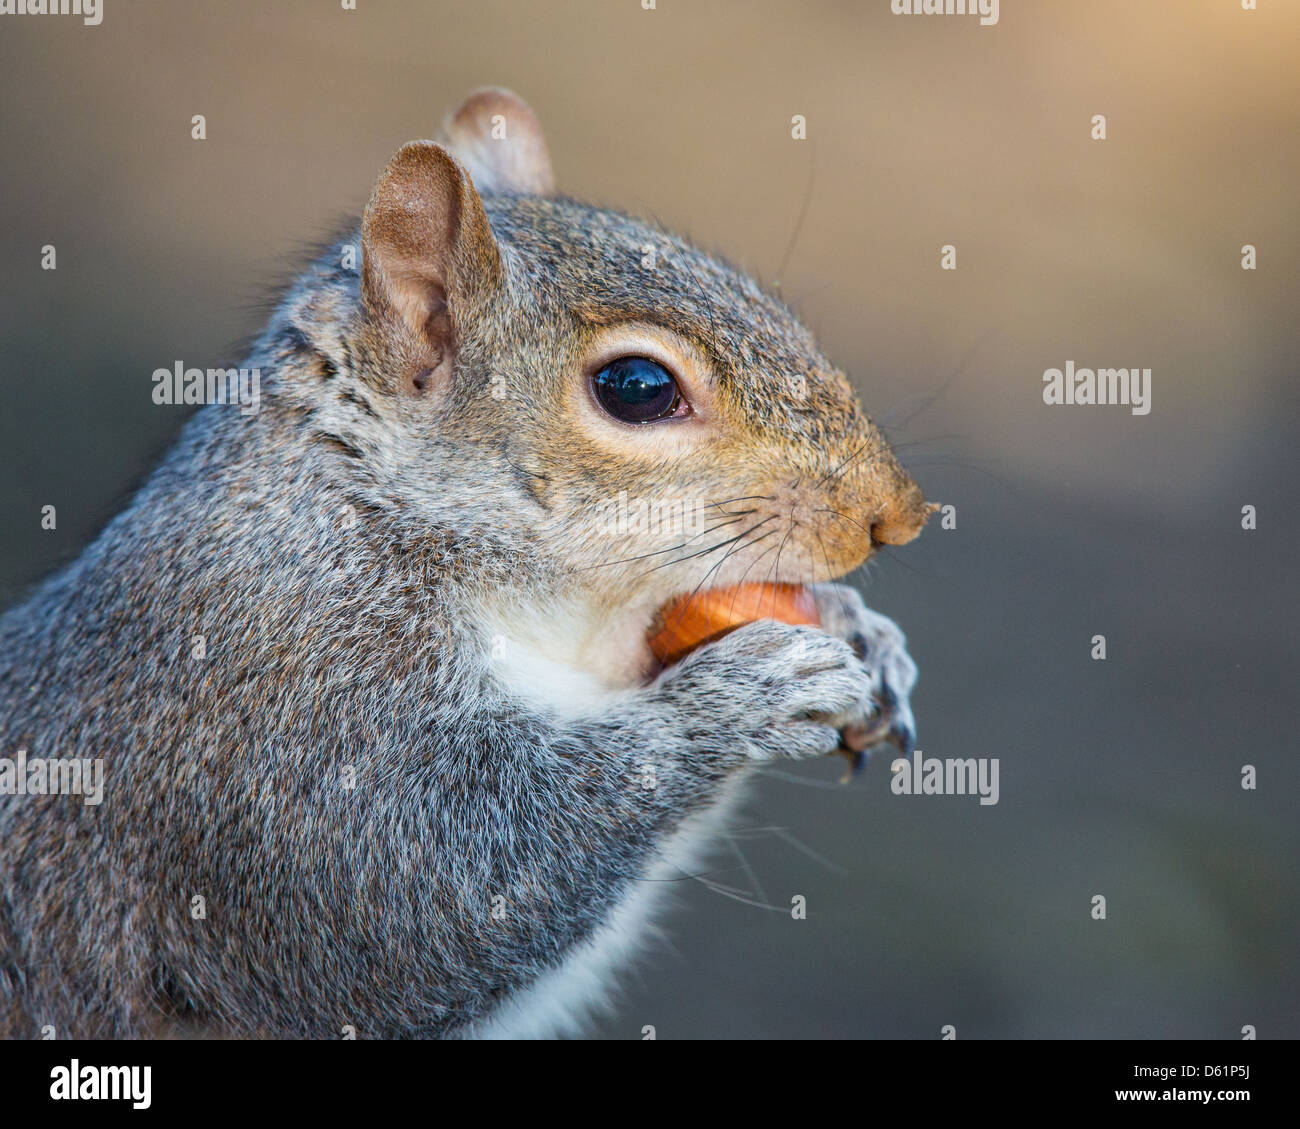 Close-up d'un écureuil gris (Sciurus carolinensis) manger une noisette, soft focus fond brun jaune. Banque D'Images